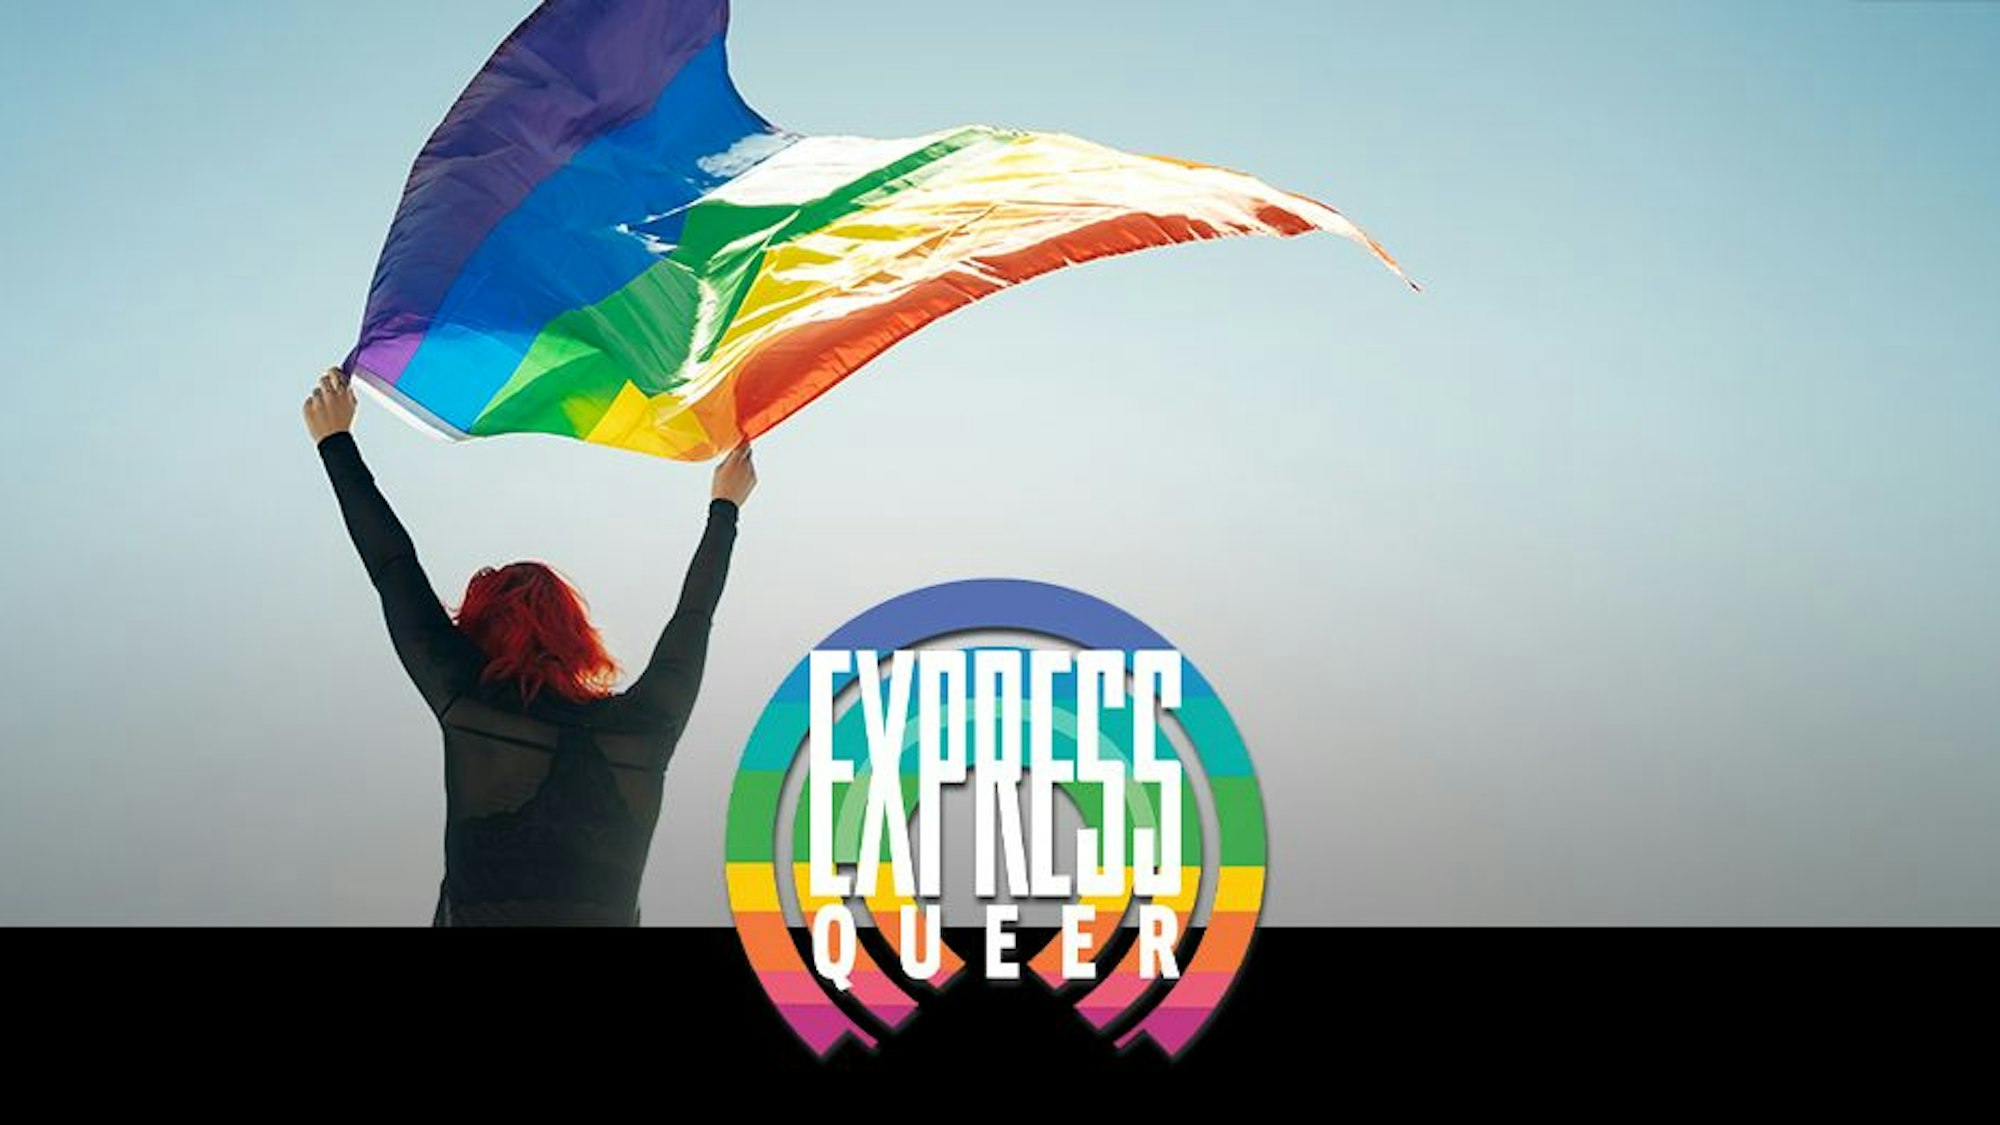 Eine Frau weht eine Regenbogenfahne vor dem EXPRESS-Queer-Logo.